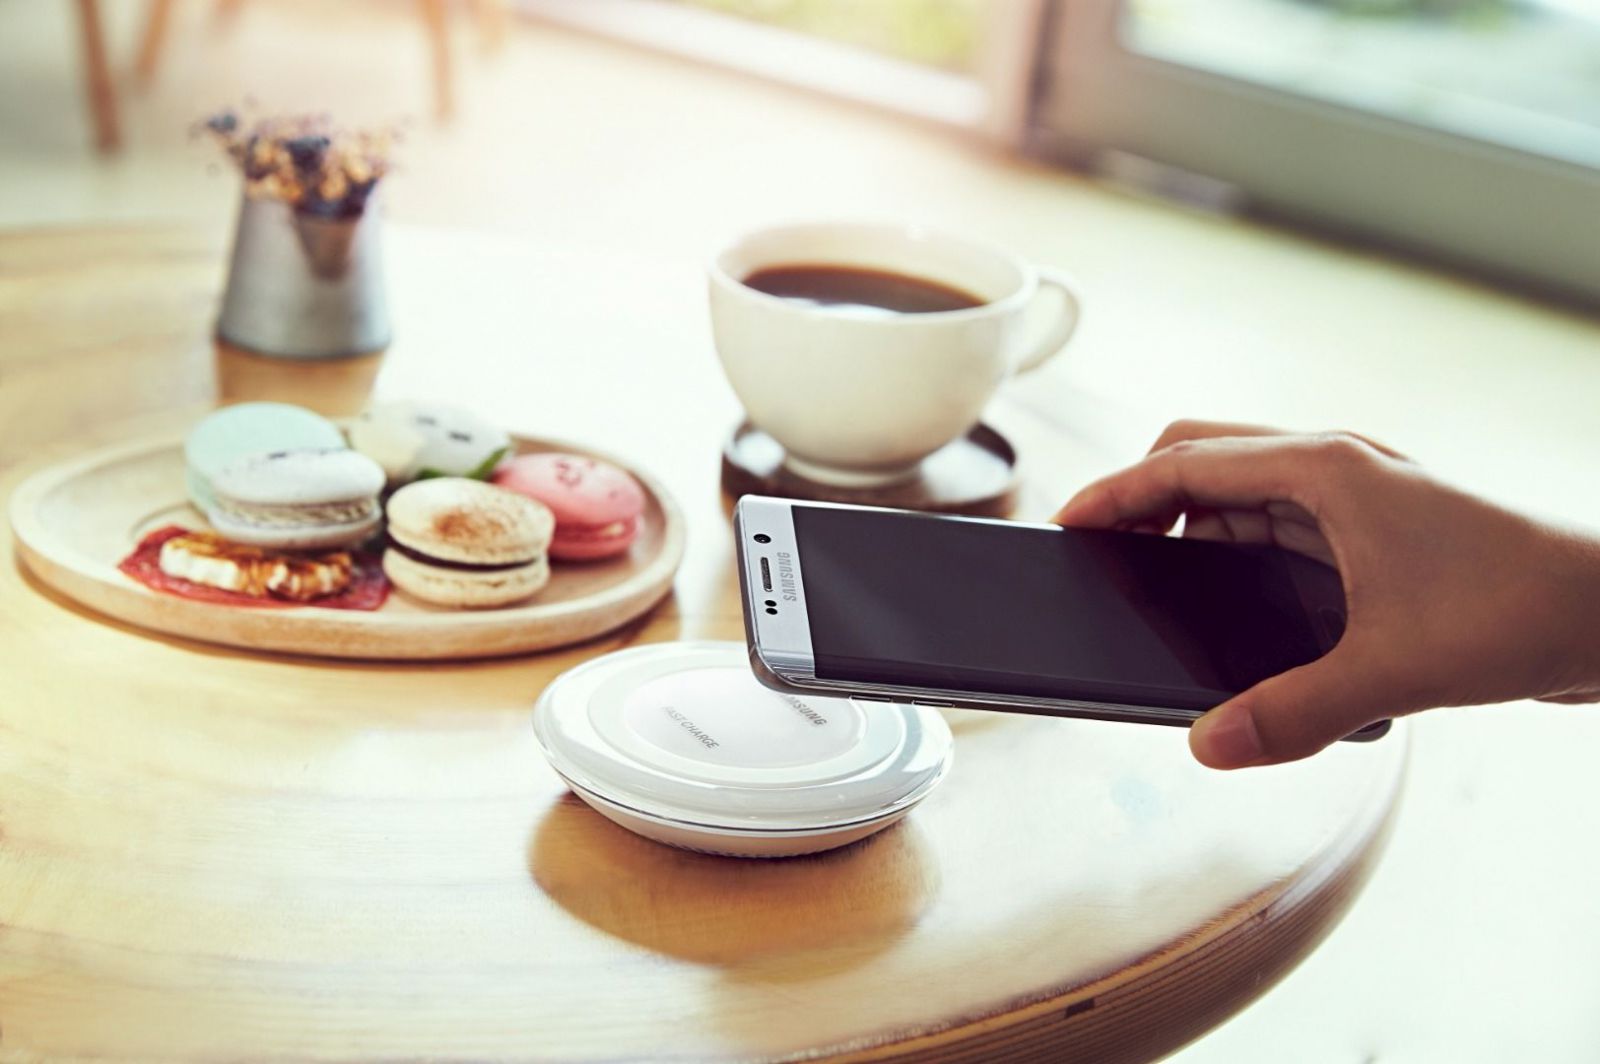 Galaxy S6 edge+ mit Wireless Charger auf dem Tisch